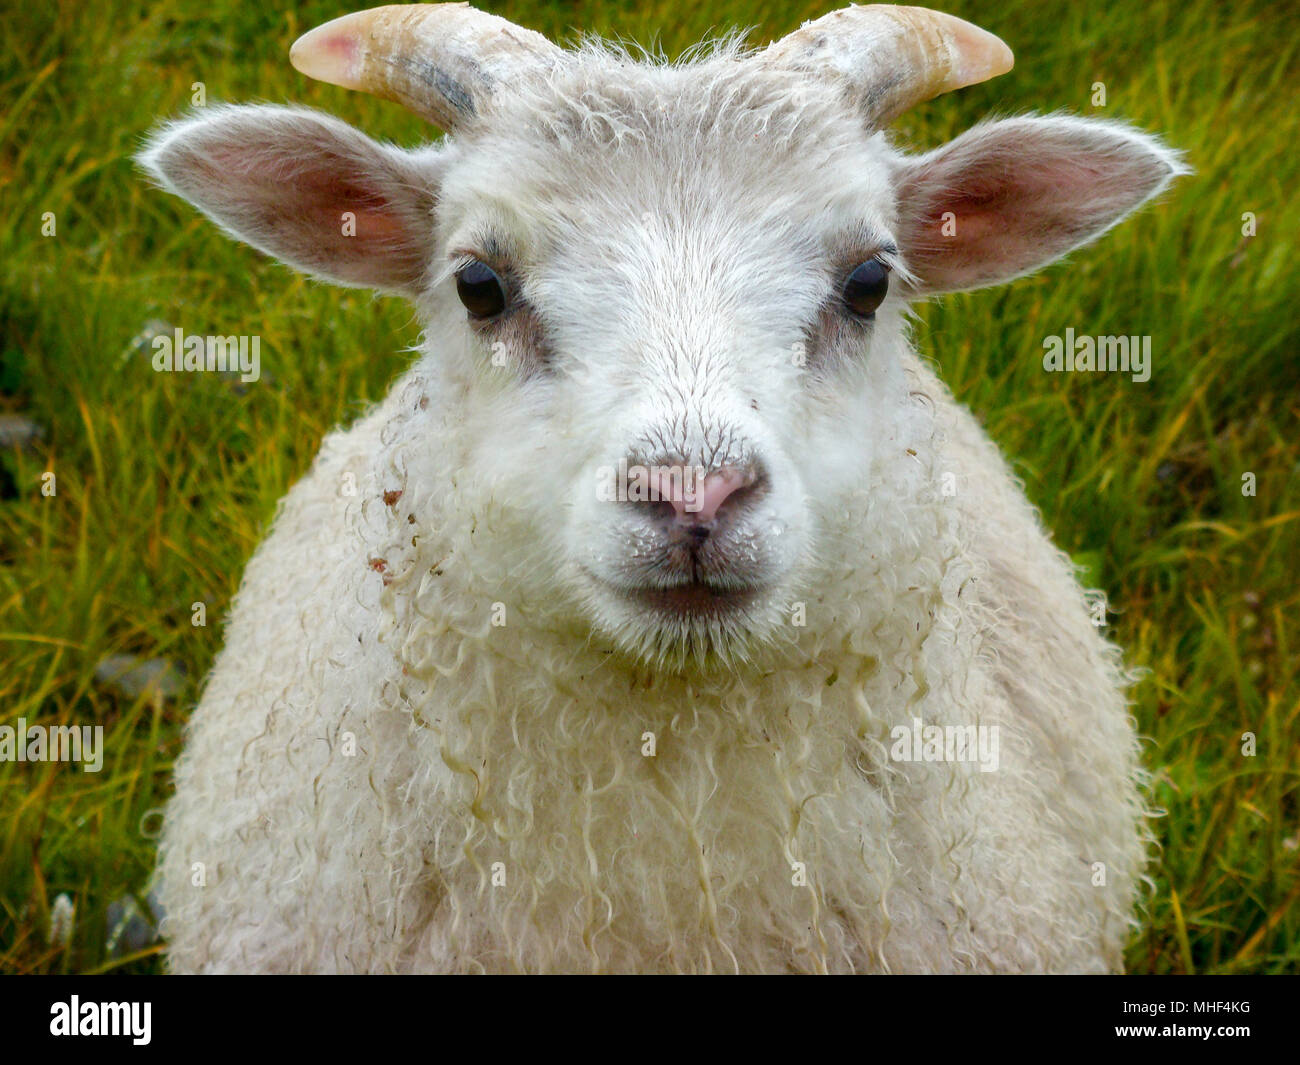 newborn baby white ram sheep under the rain and grass background Stock Photo